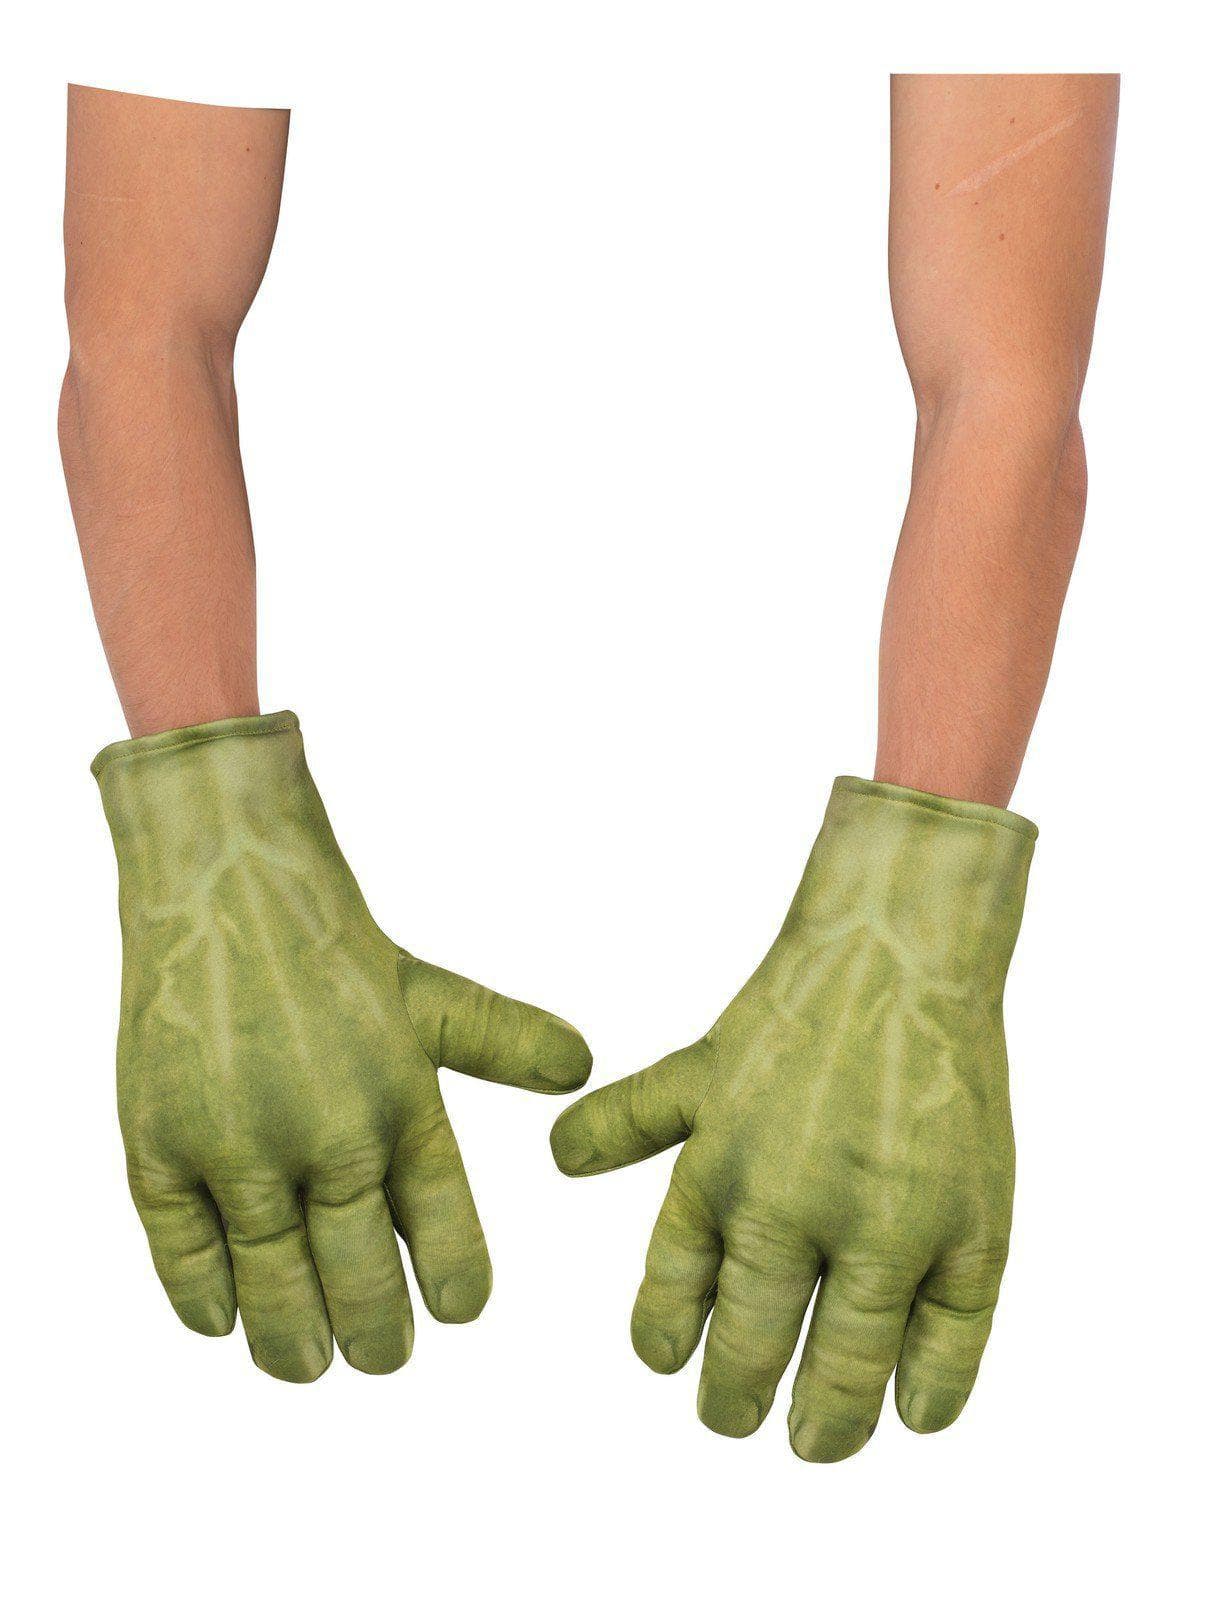 Adult Avengers: Endgame Hulk Padded Gloves - costumes.com